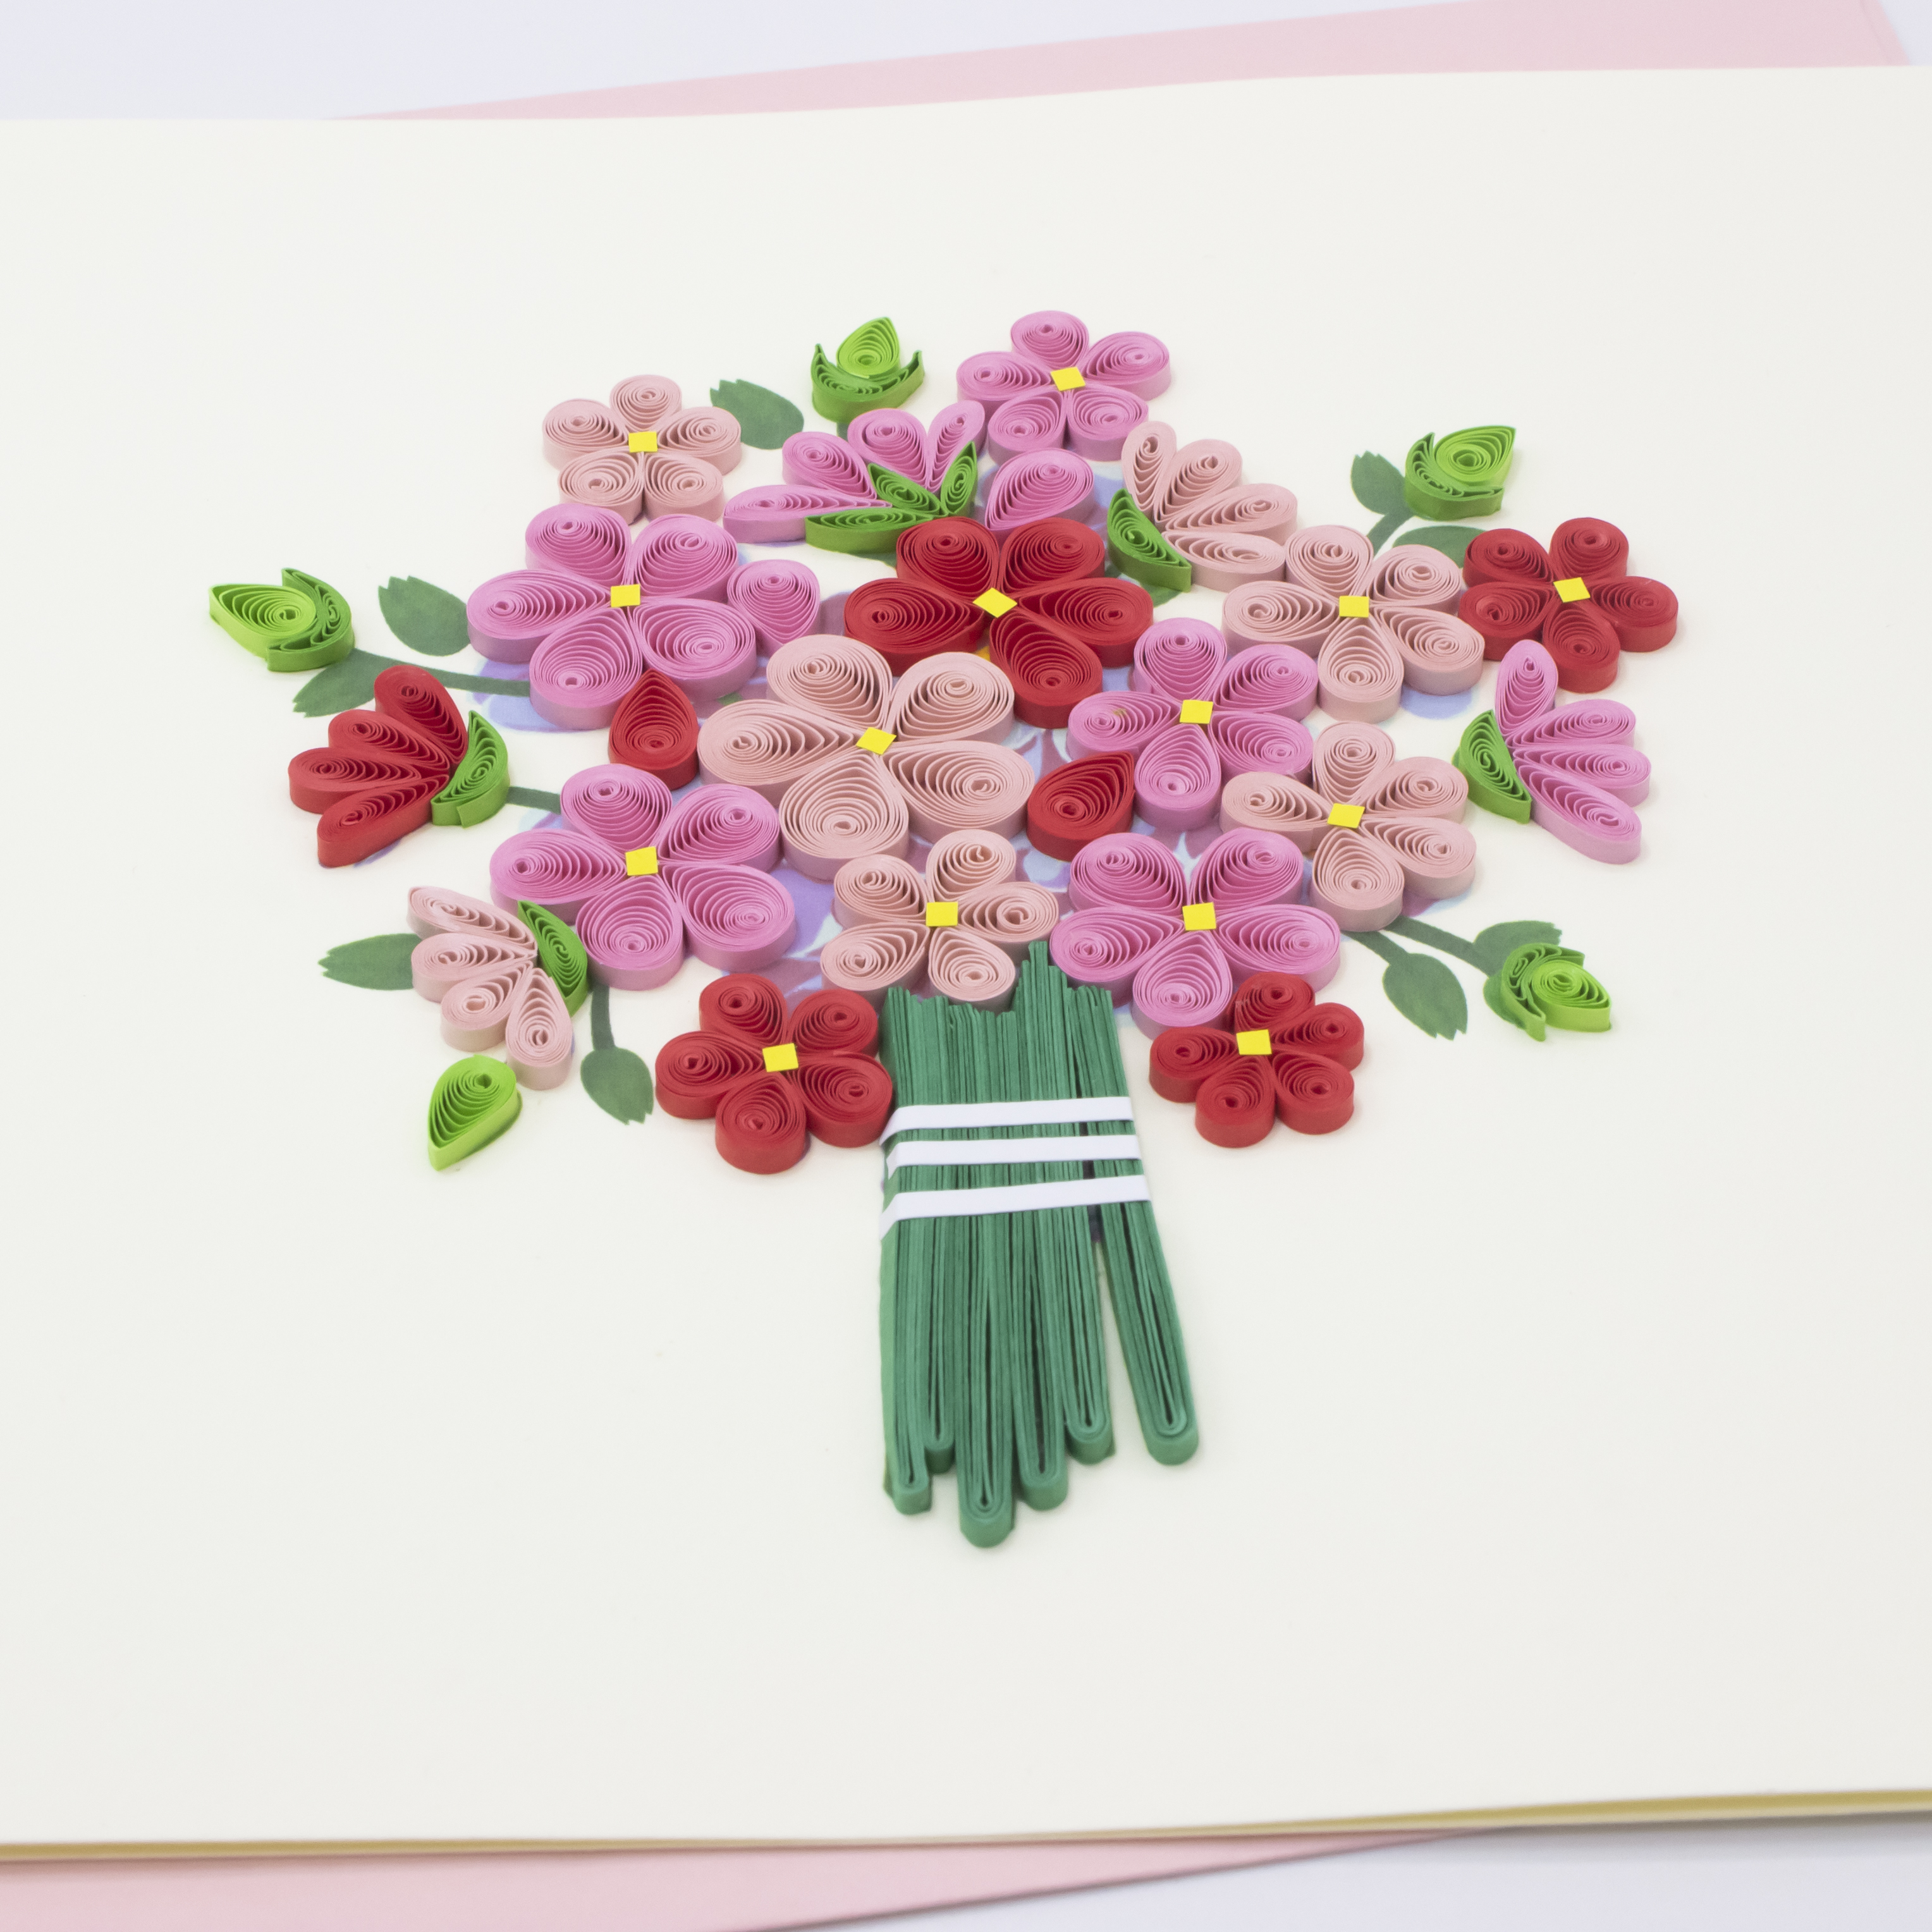 Thiệp Handmade - Thiệp Bó Hoa Hồng nhiều màu (Quilling Card) - Tặng Kèm Khung Giấy Để Bàn - Thiệp chúc mừng sinh nhật, kỷ niệm, tình yêu, cảm ơn...